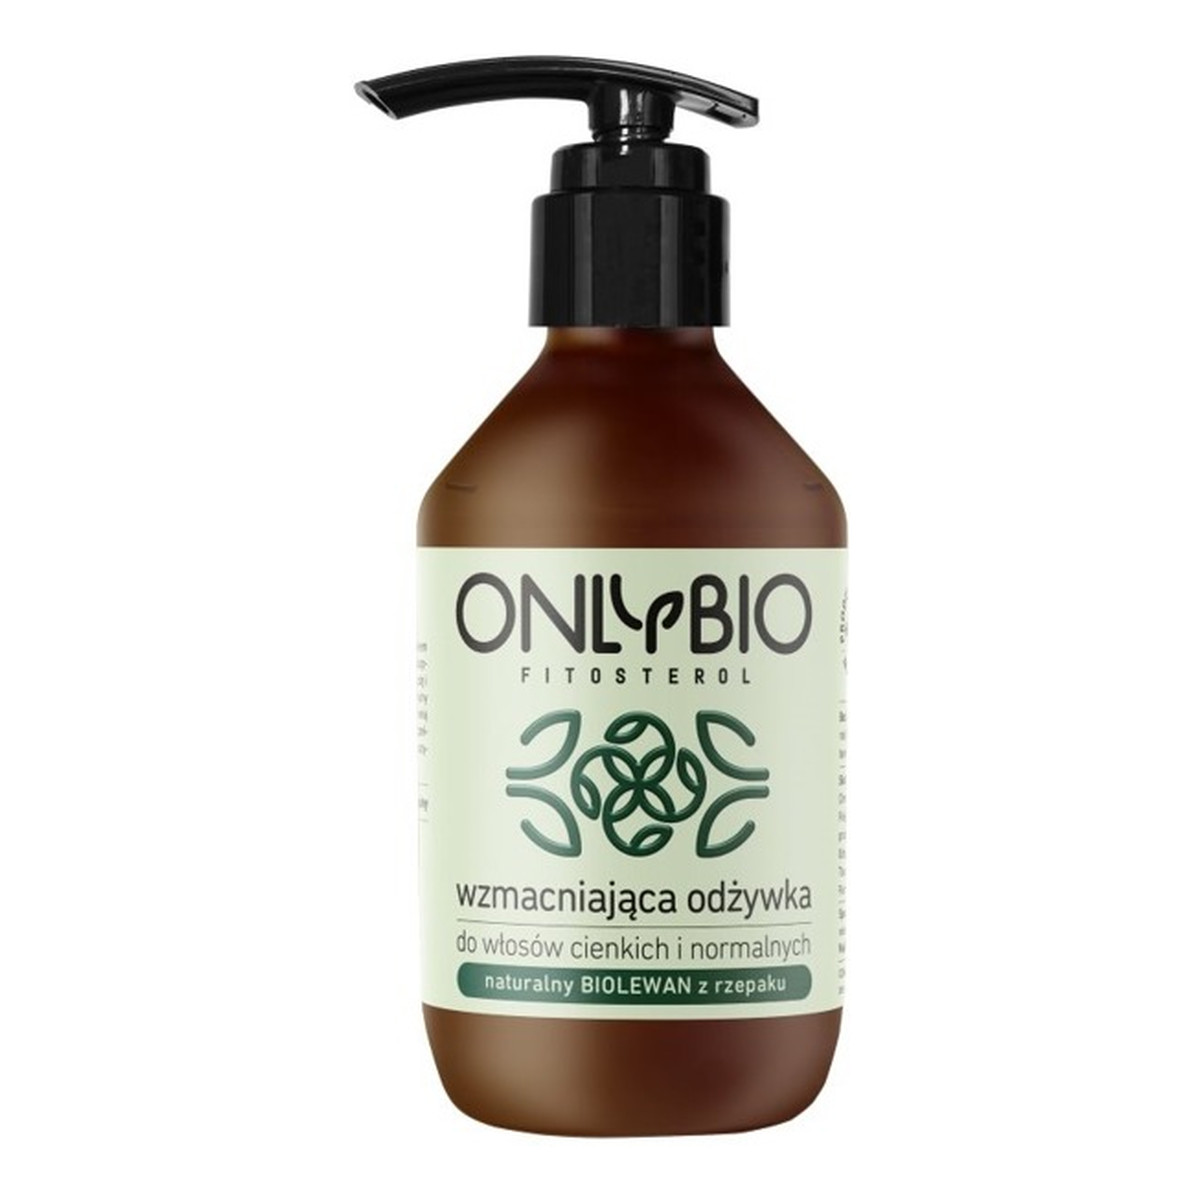 OnlyBio Fitosterol odżywka wzmacniająca do włosów cienkich i normalnych z olejem ze słonecznika 250ml